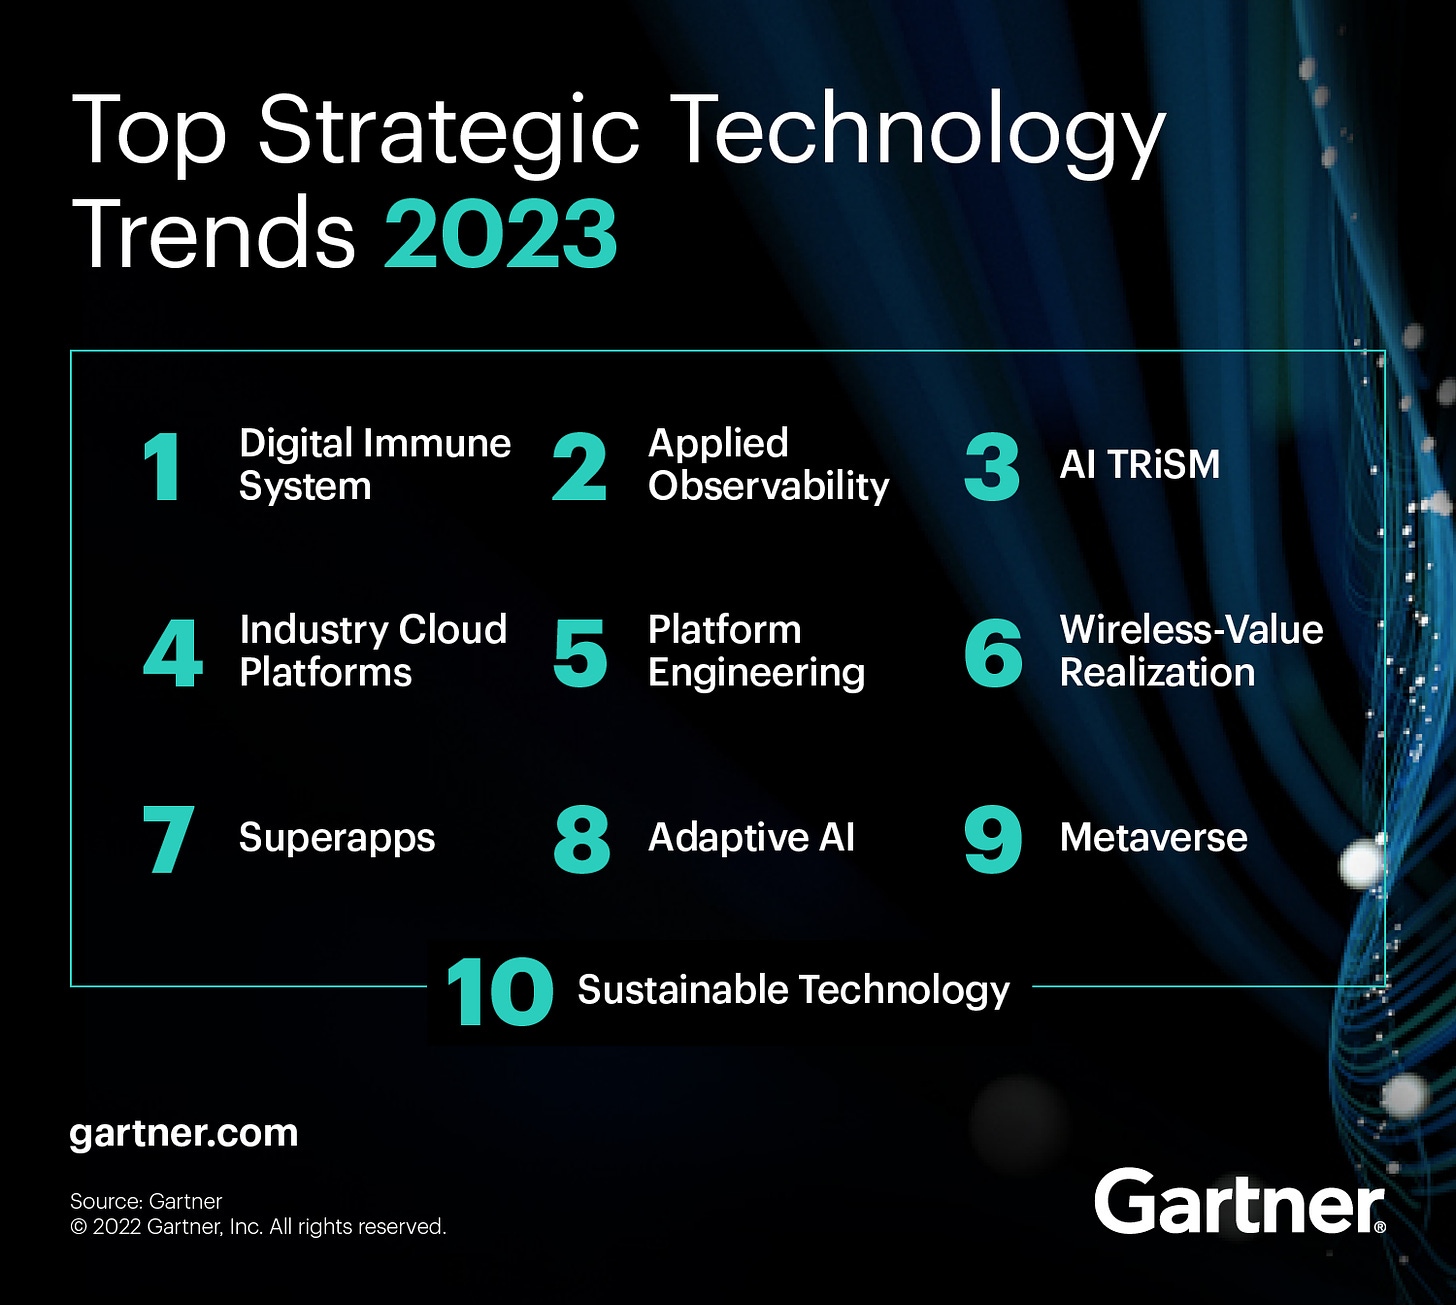 Las 10 principales tendencias tecnológicas estratégicas de Gartner para 2023